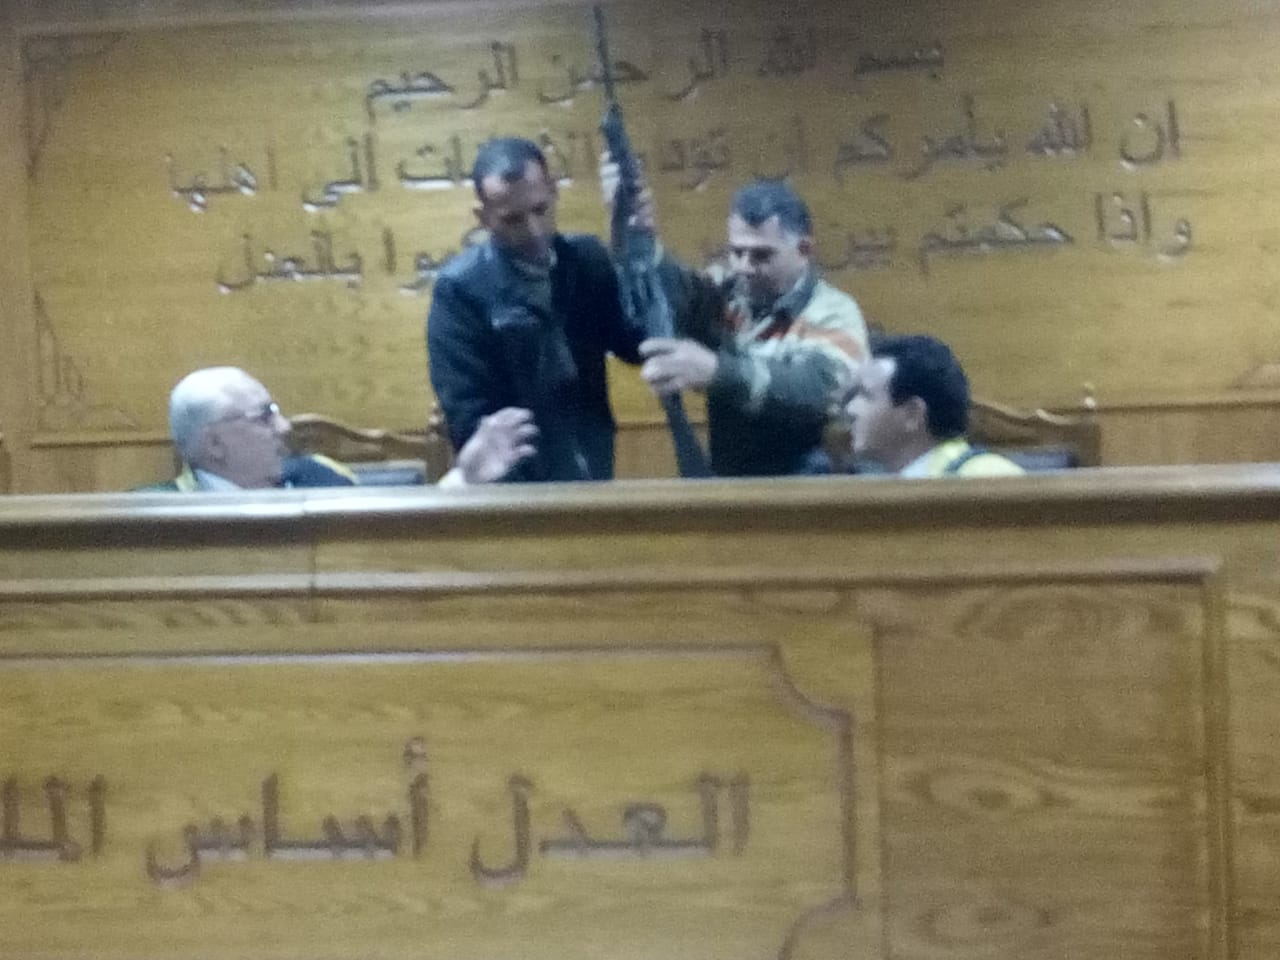 هيئة المحكمة برئاسة المستشار محمد سعيد الشربينى تفض احراز العائدون من ليبيا (6)